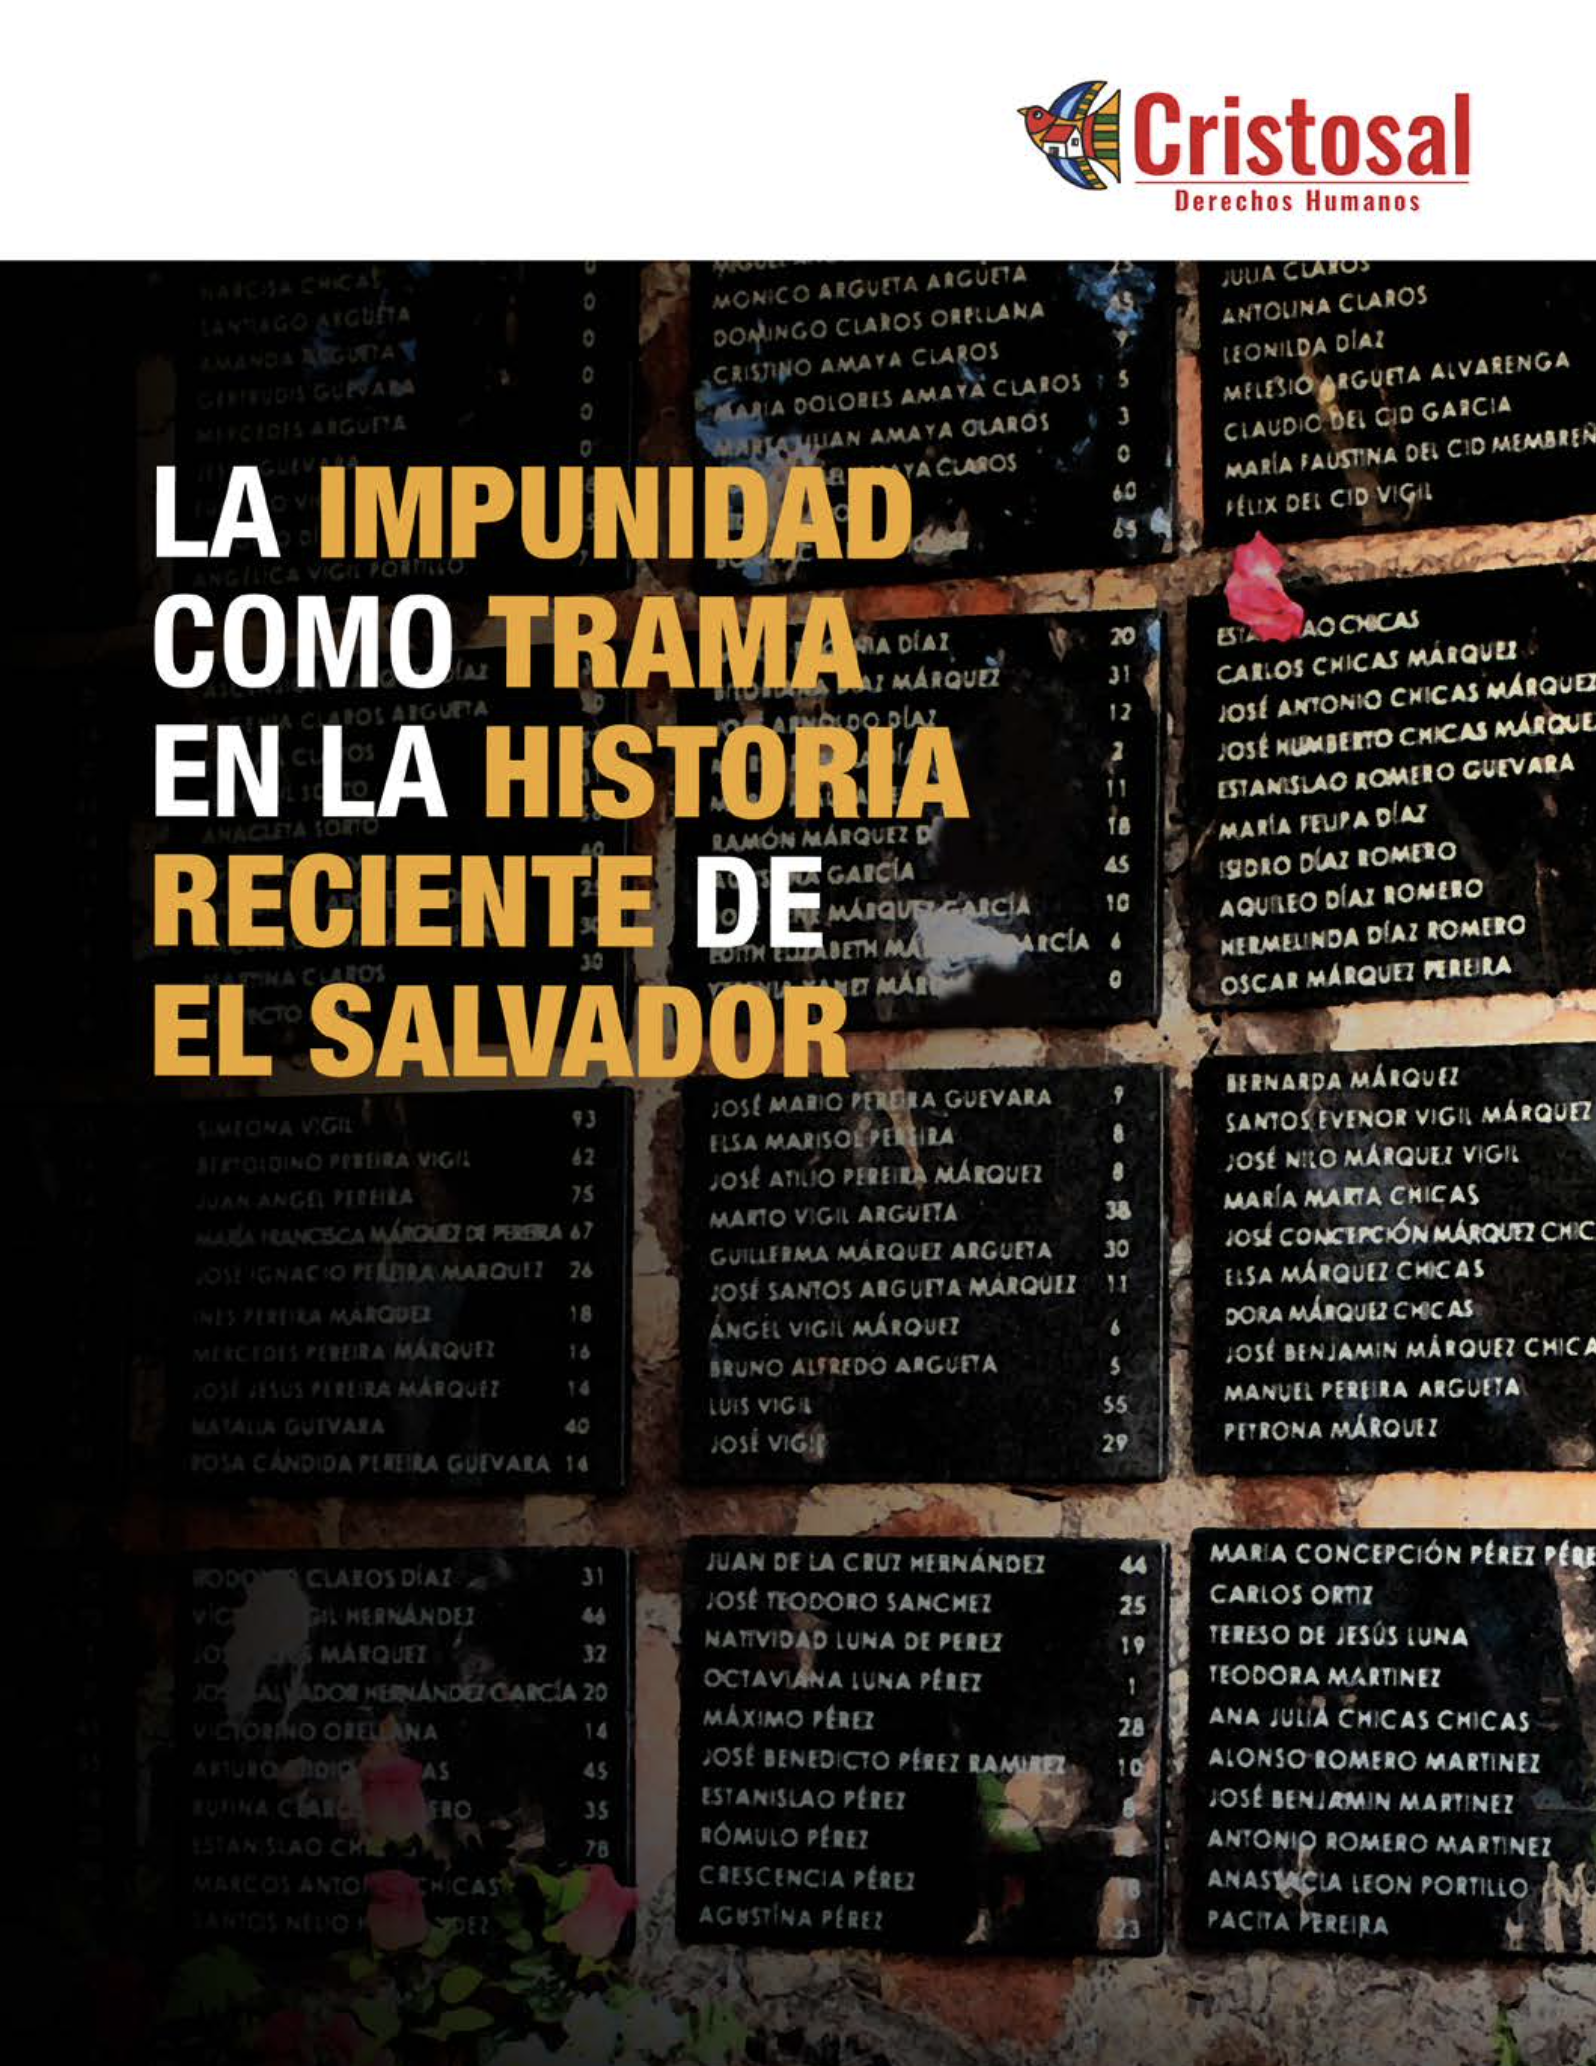 La impunidad como trama en la historia reciente de El Salvador.